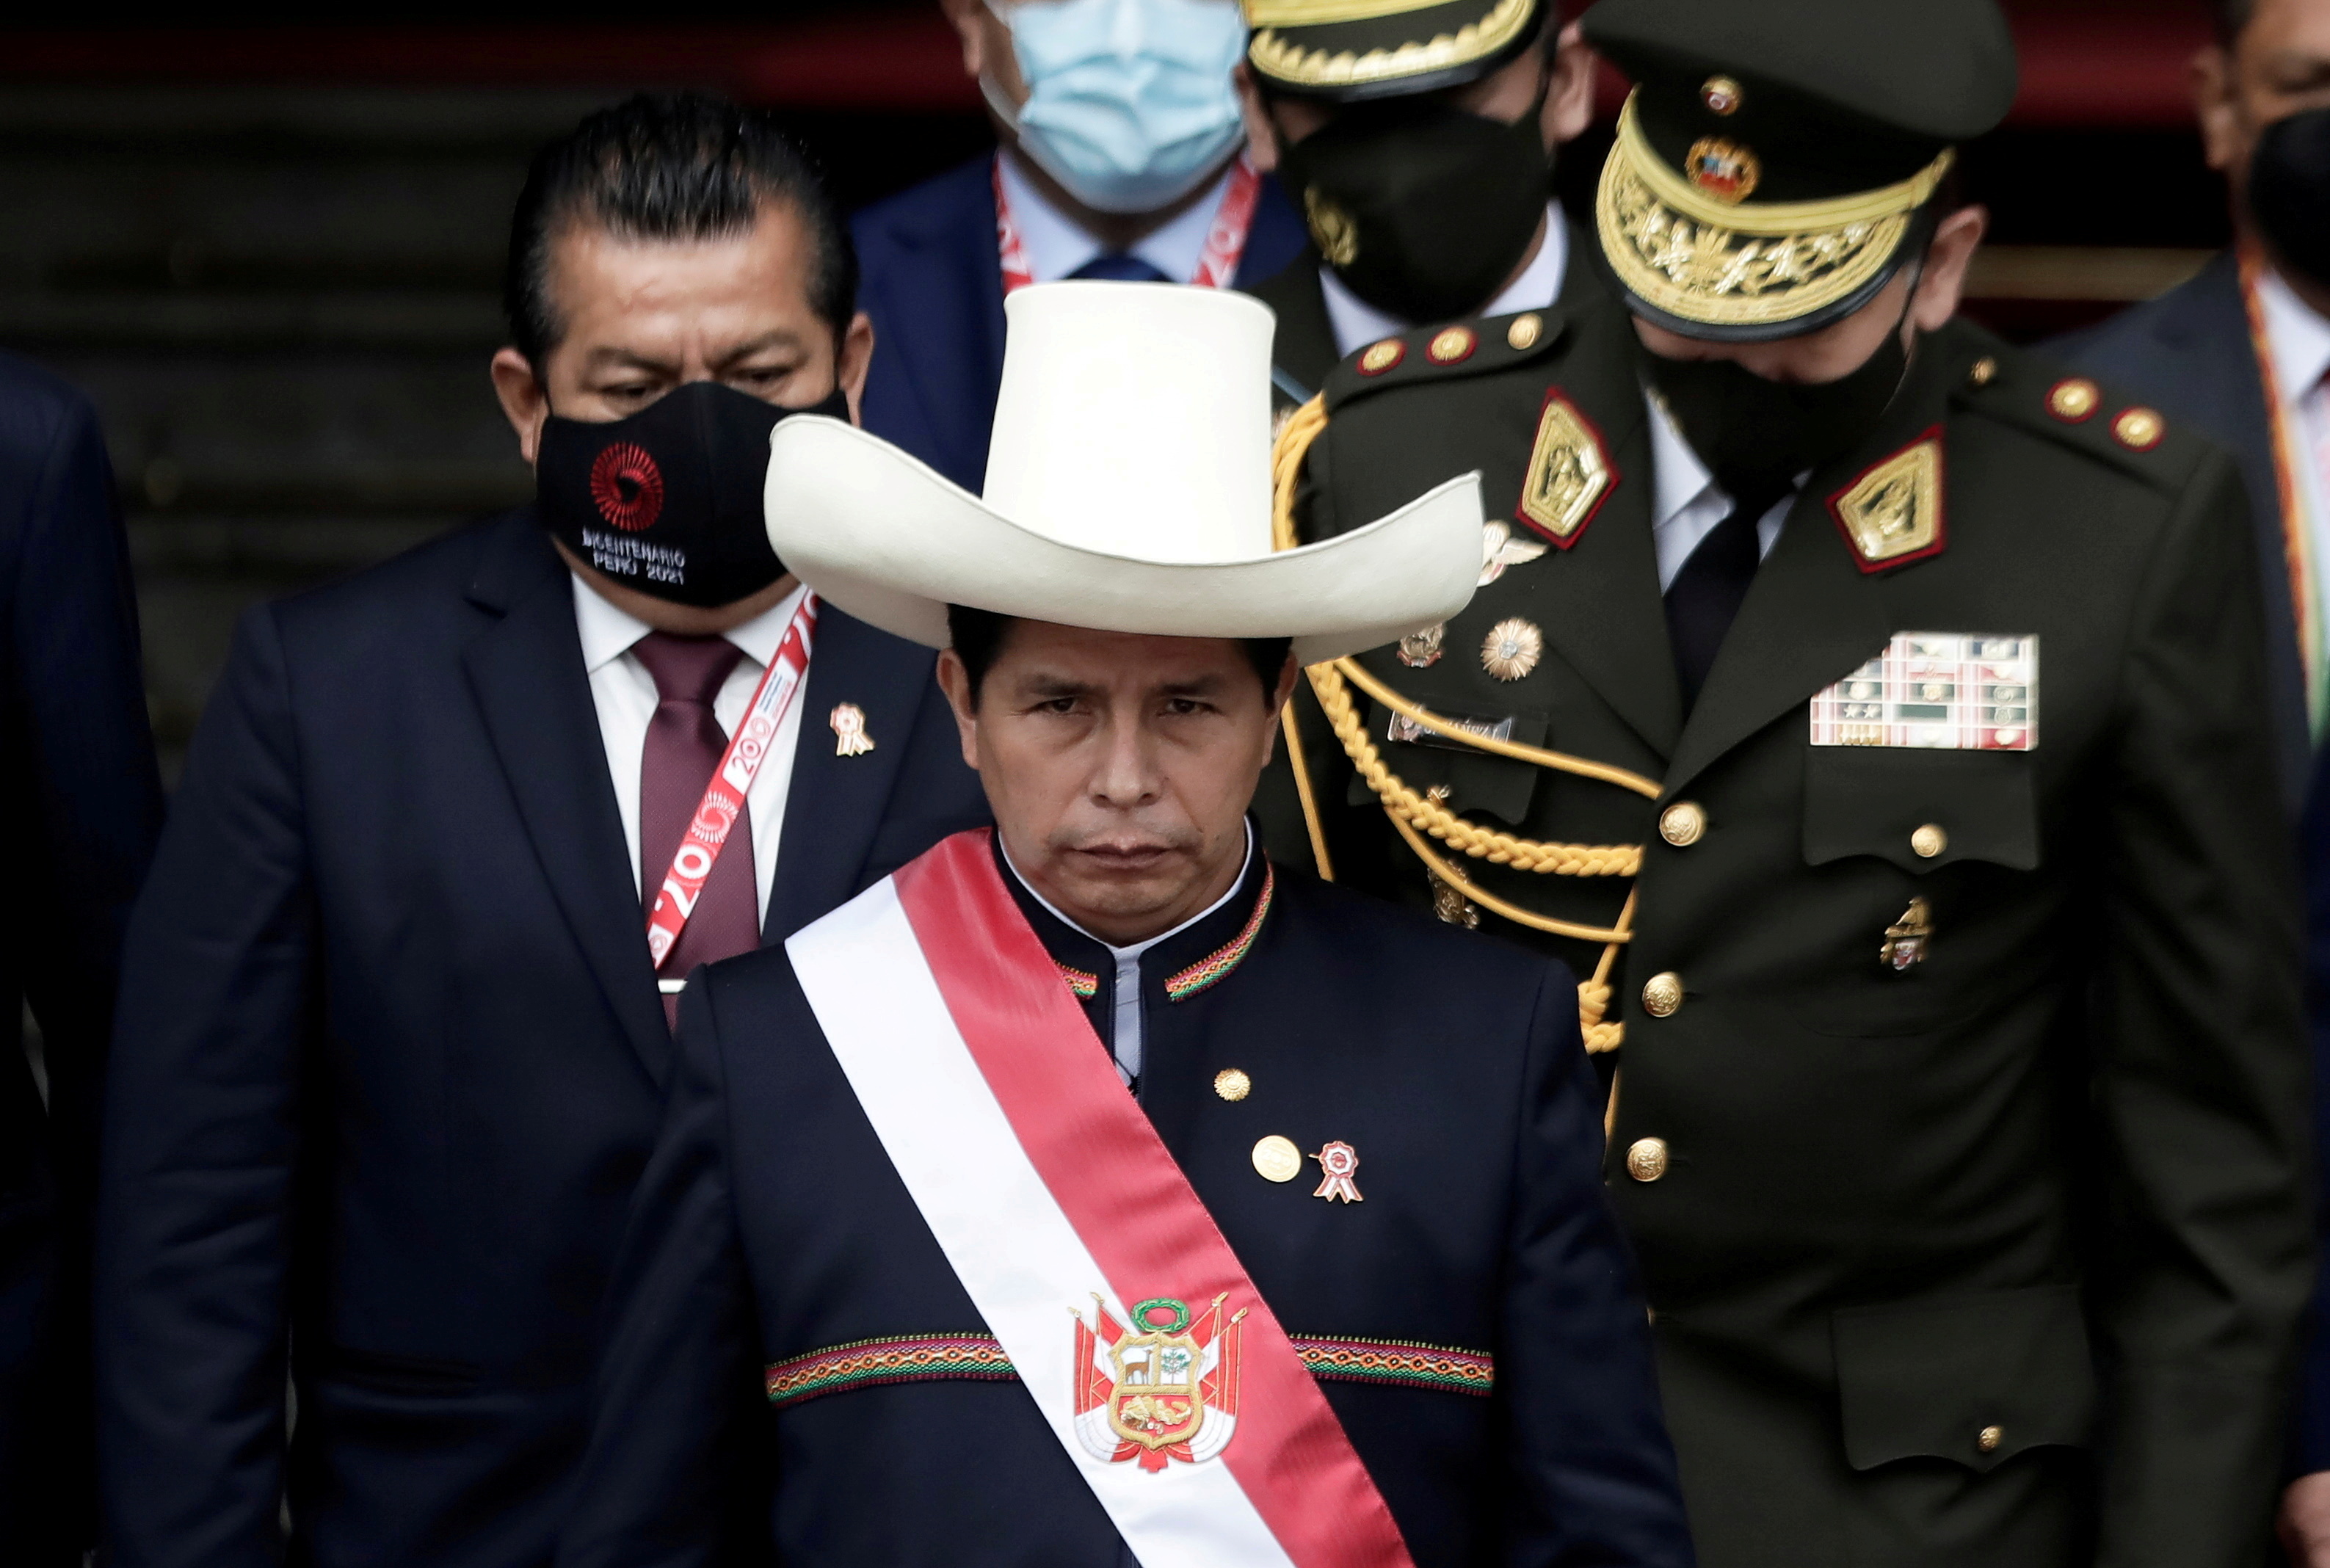 El Presidente Pedro Castillo saliendo del Congreso tras juramentar en el cargo. Foto: REUTERS/Angela Ponce